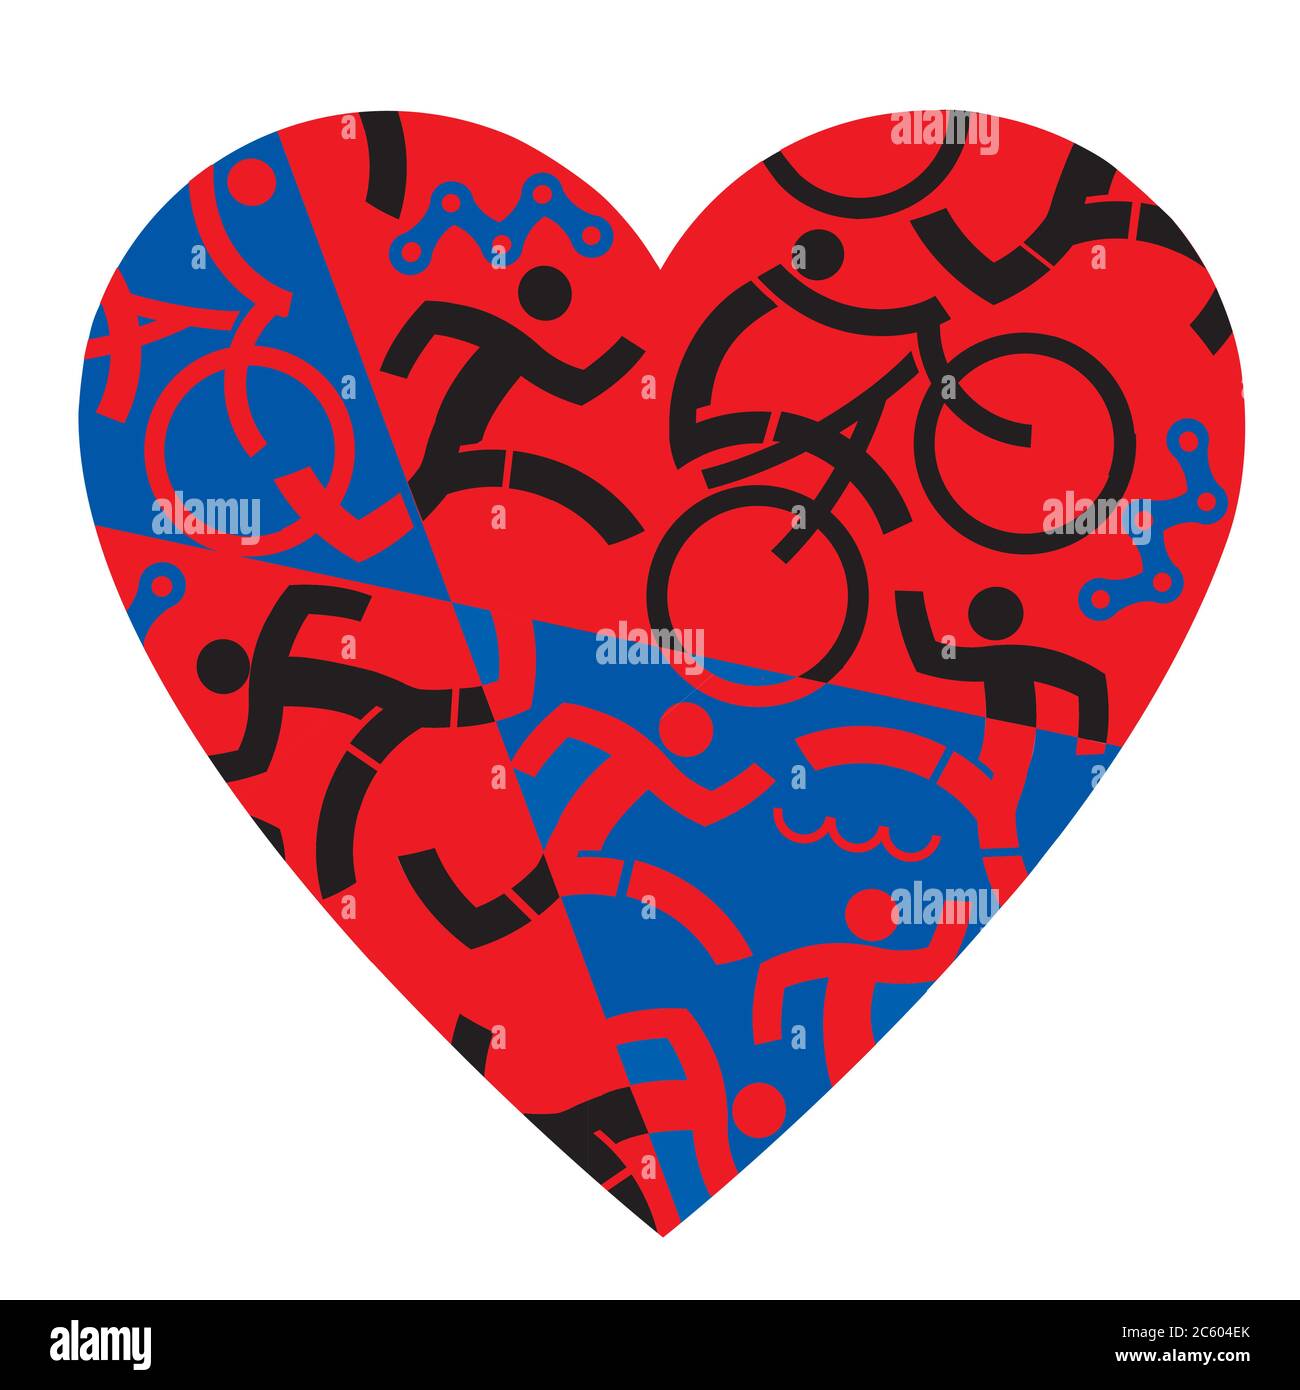 Ich liebe Triathlon, Laufen, Schwimmen, Radfahren. Abbildung mit rotem und schwarzem Herzsymbol mit Triathlon-Athleten, Schwimmern, Radfahrern, Läufern. Stock Vektor